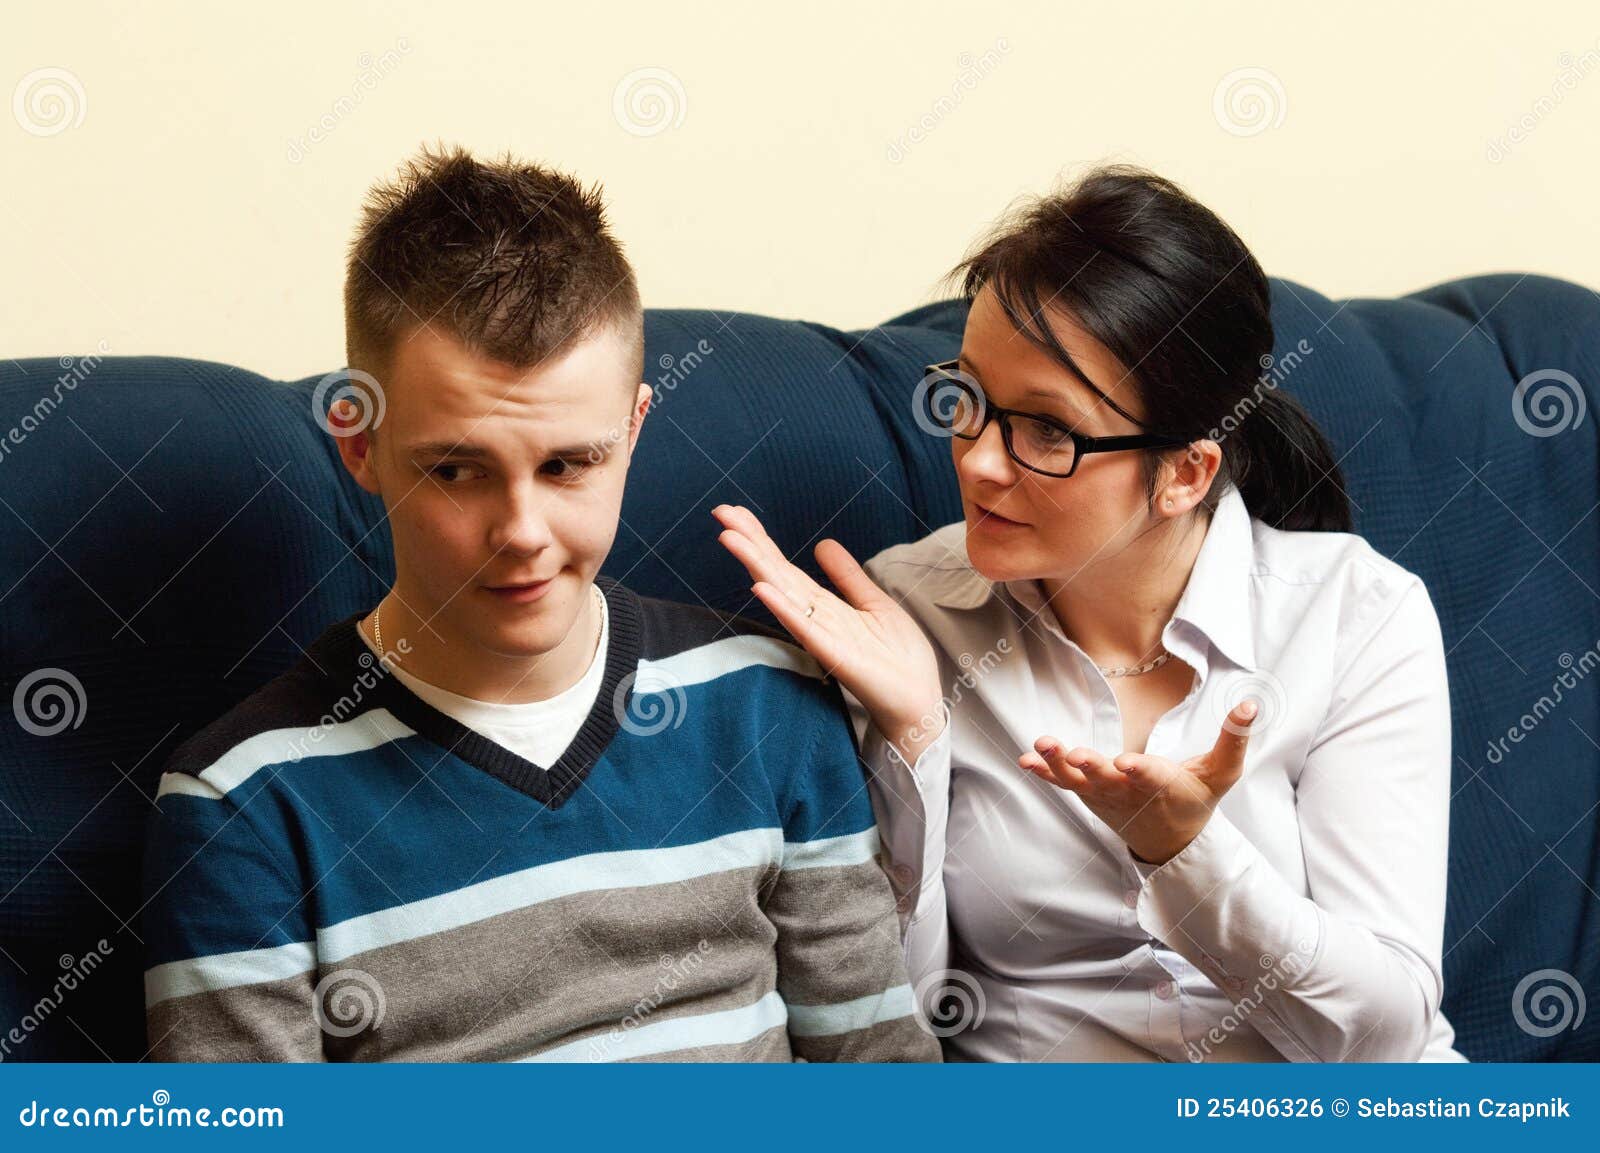 Мамочка с сыном с разговорами. Разговор матери с сыном. Наглый подросток. Мама разговаривает с подростком.